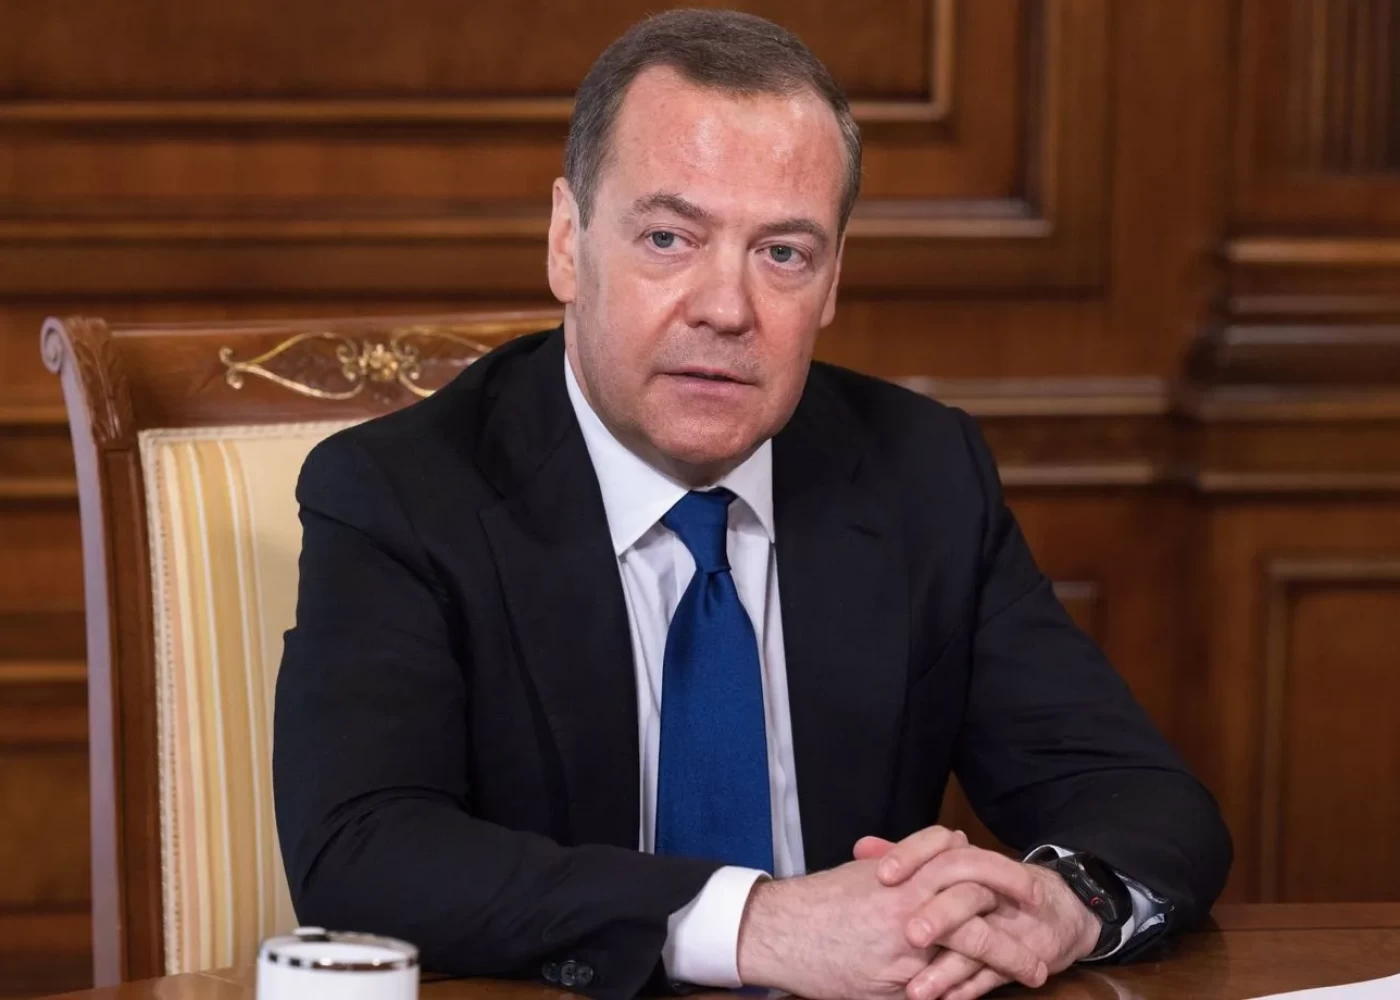 ""Crocus"dakı terror aktını Makron maliyyələşdirib" - Medvedev